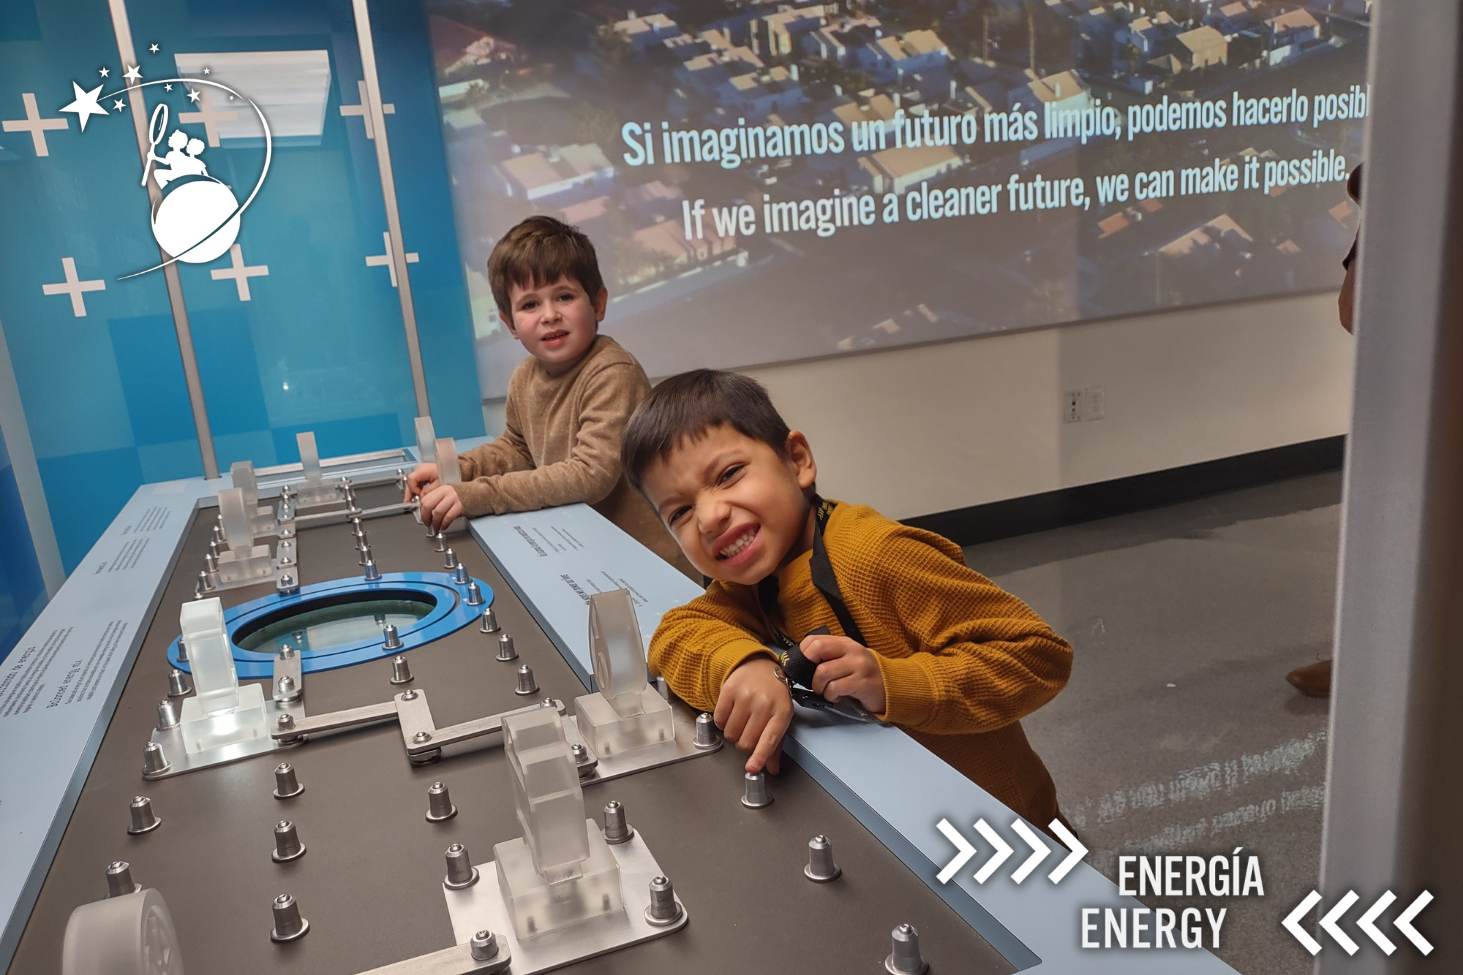 ディスカバリー子供博物館のエネルギー展示のノブで遊ぶ2人の少年